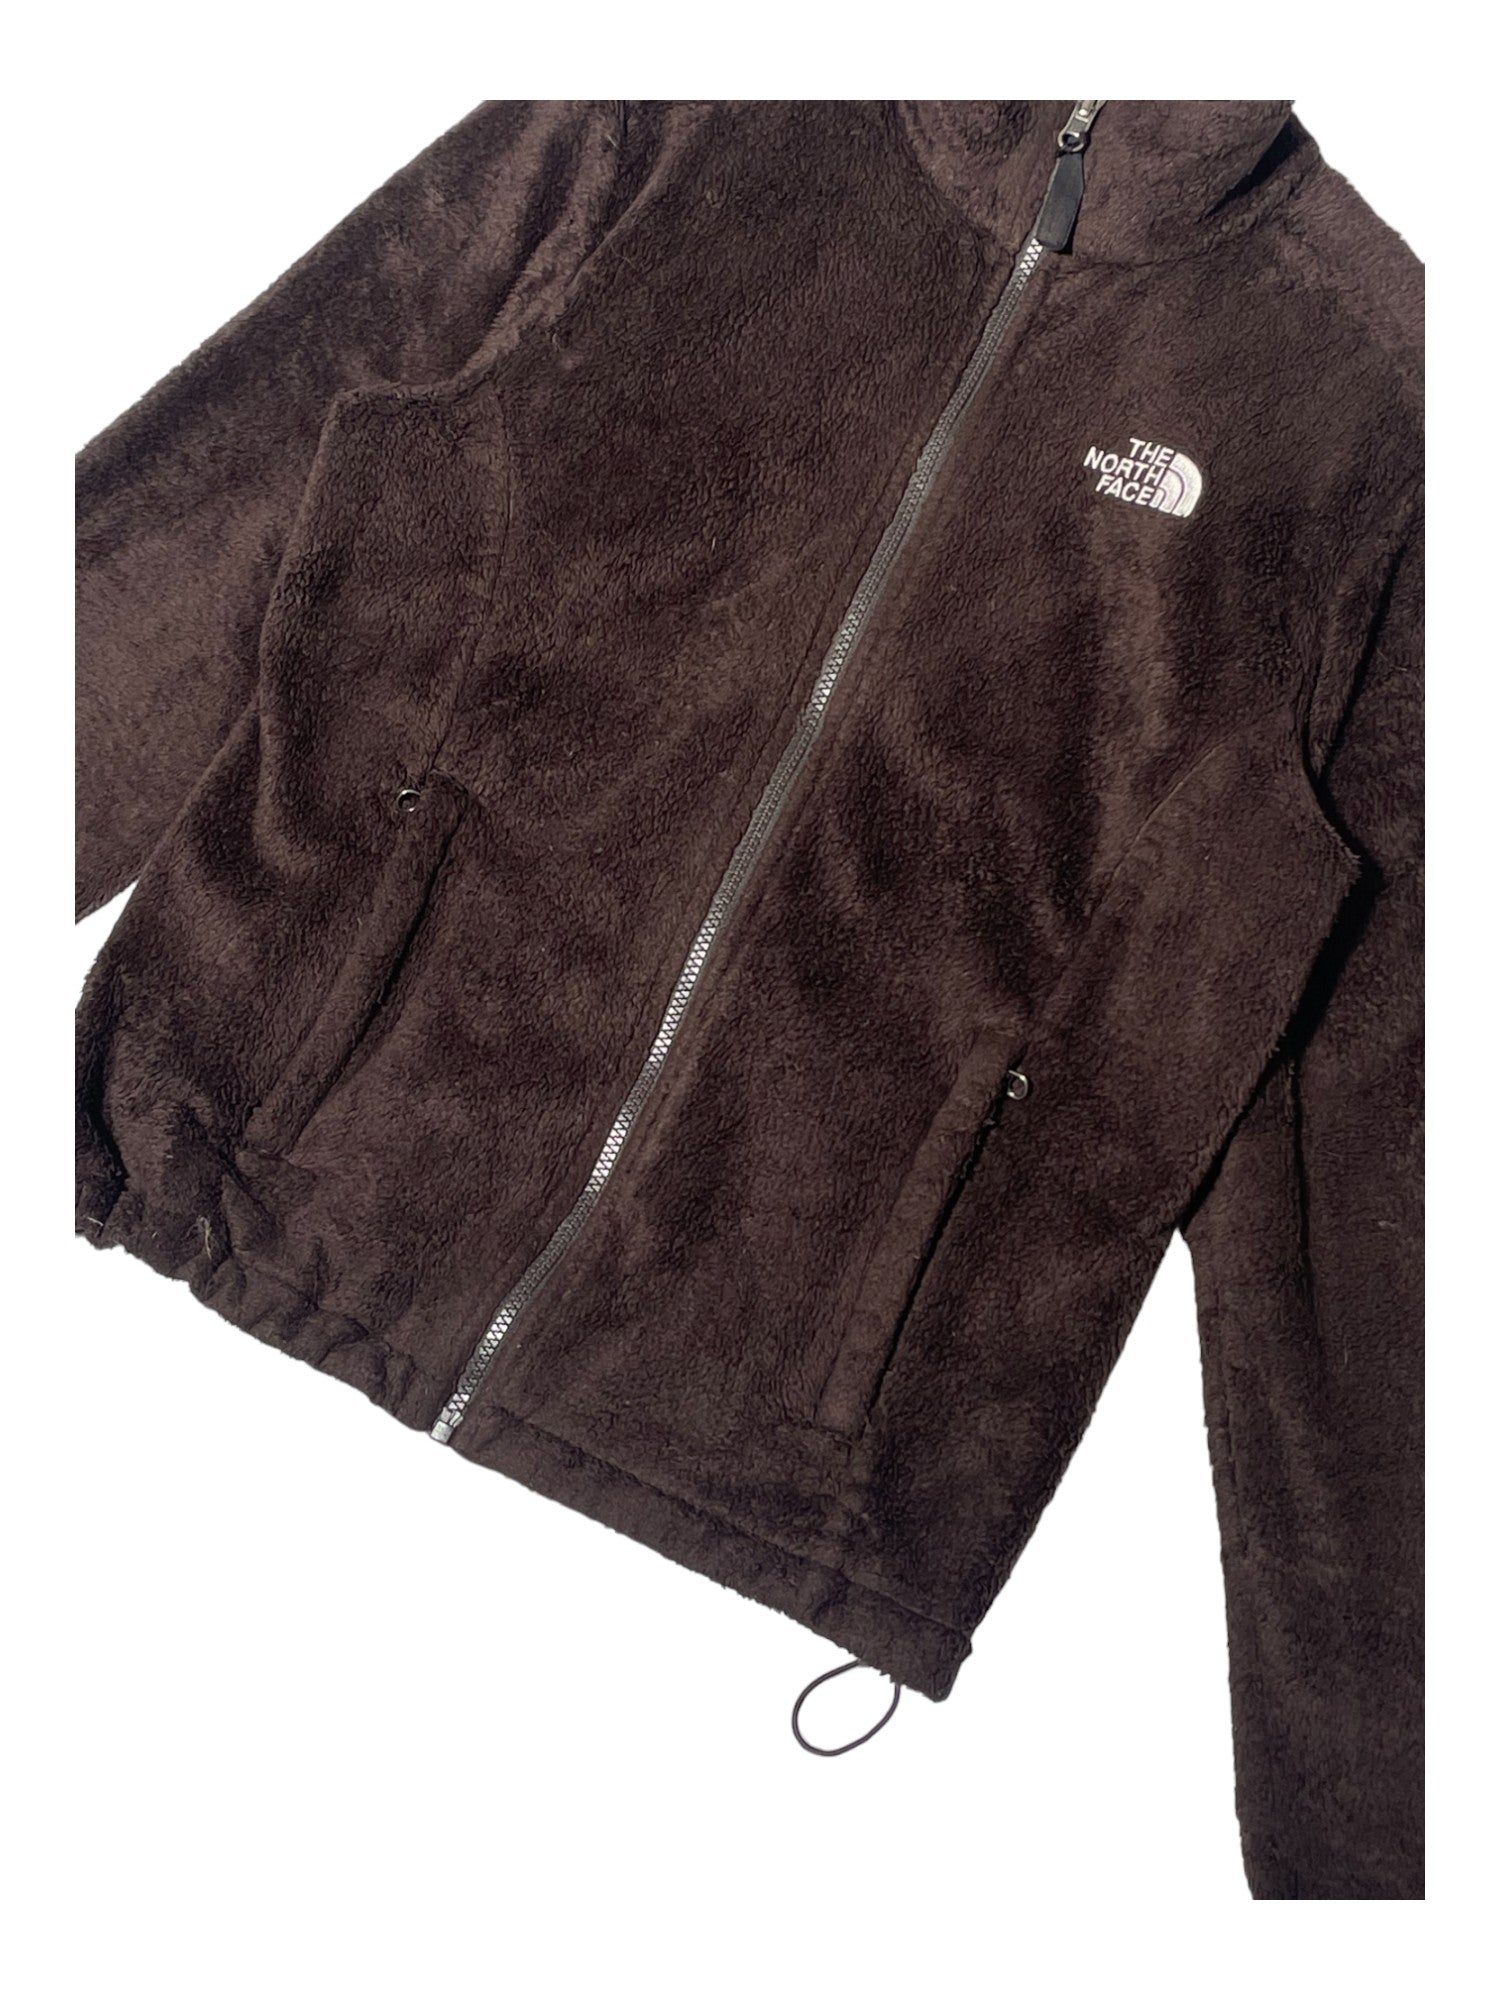 North Face Osito Jacket Large - Coats & Jackets, Facebook Marketplace